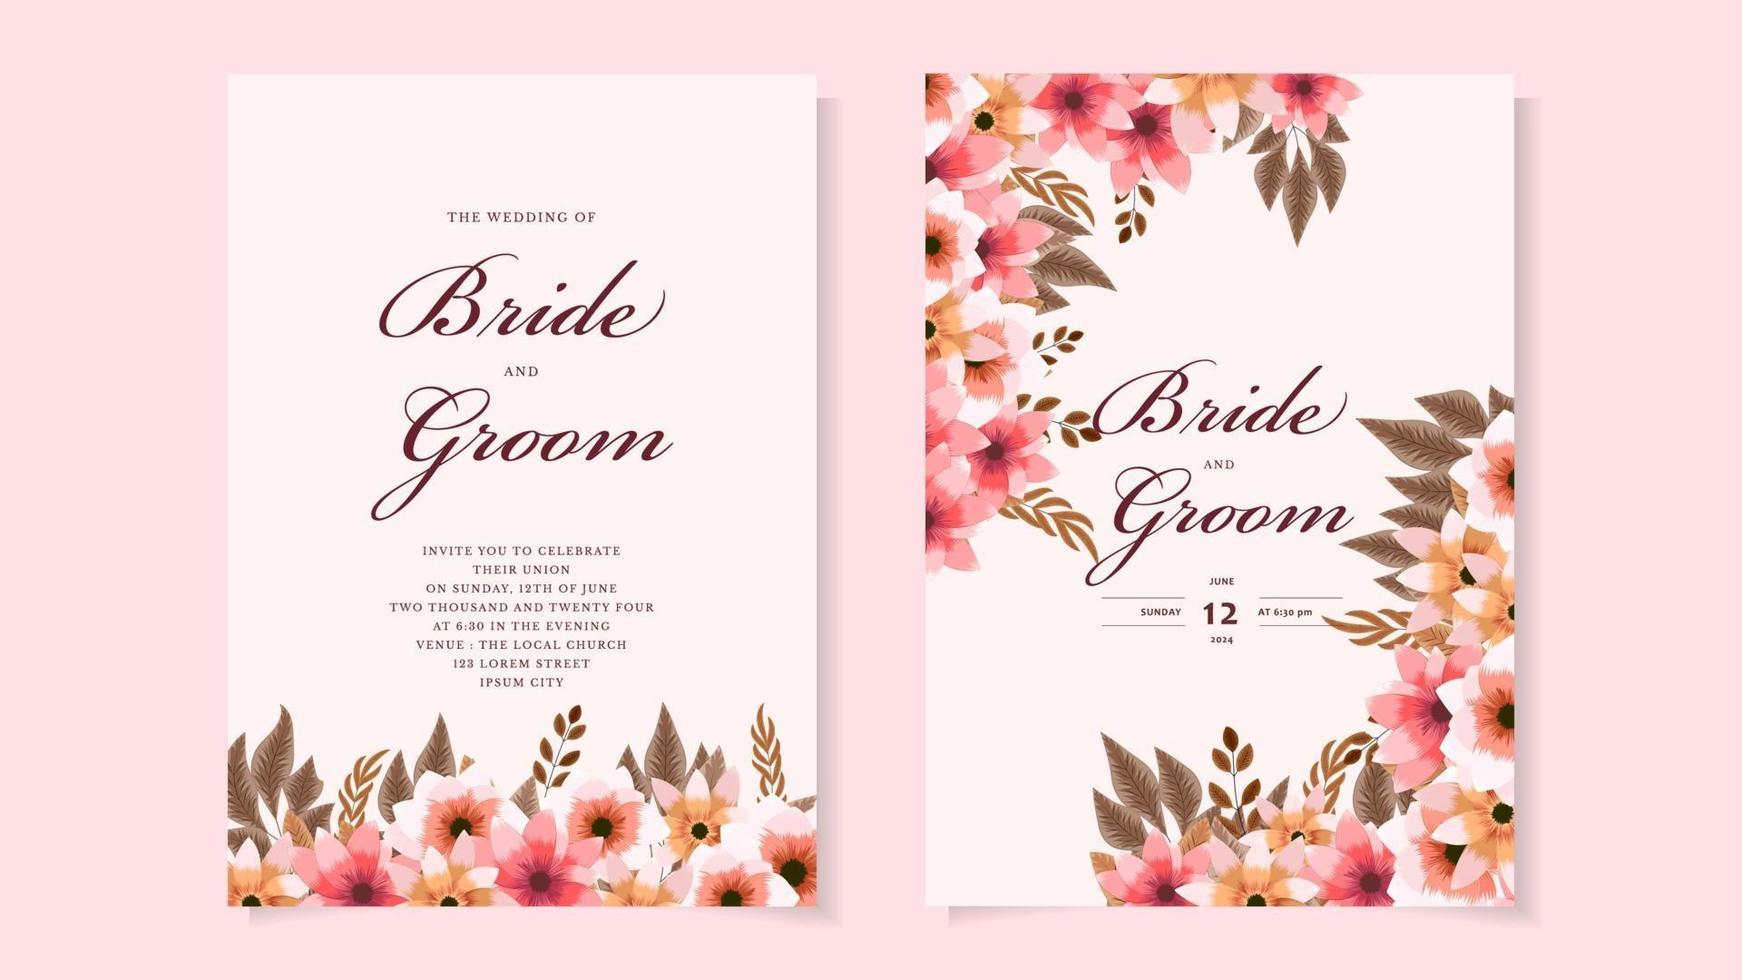 modèle de carte d'invitation de mariage couronne de fleurs avec des fleurs de qualité supérieure vecteur